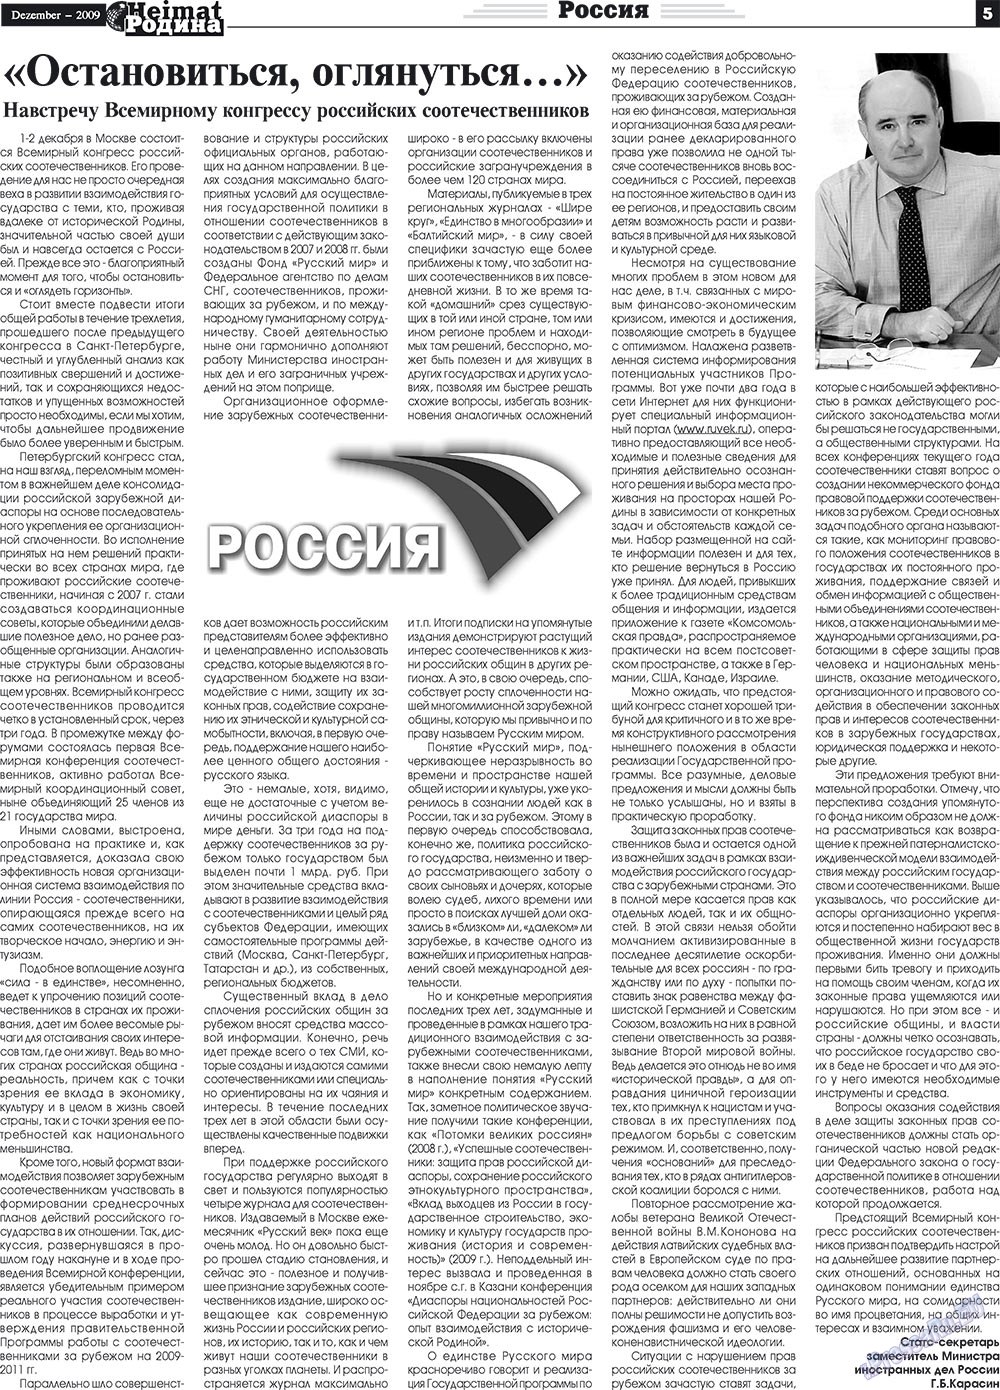 Heimat-Родина (газета). 2009 год, номер 12, стр. 5